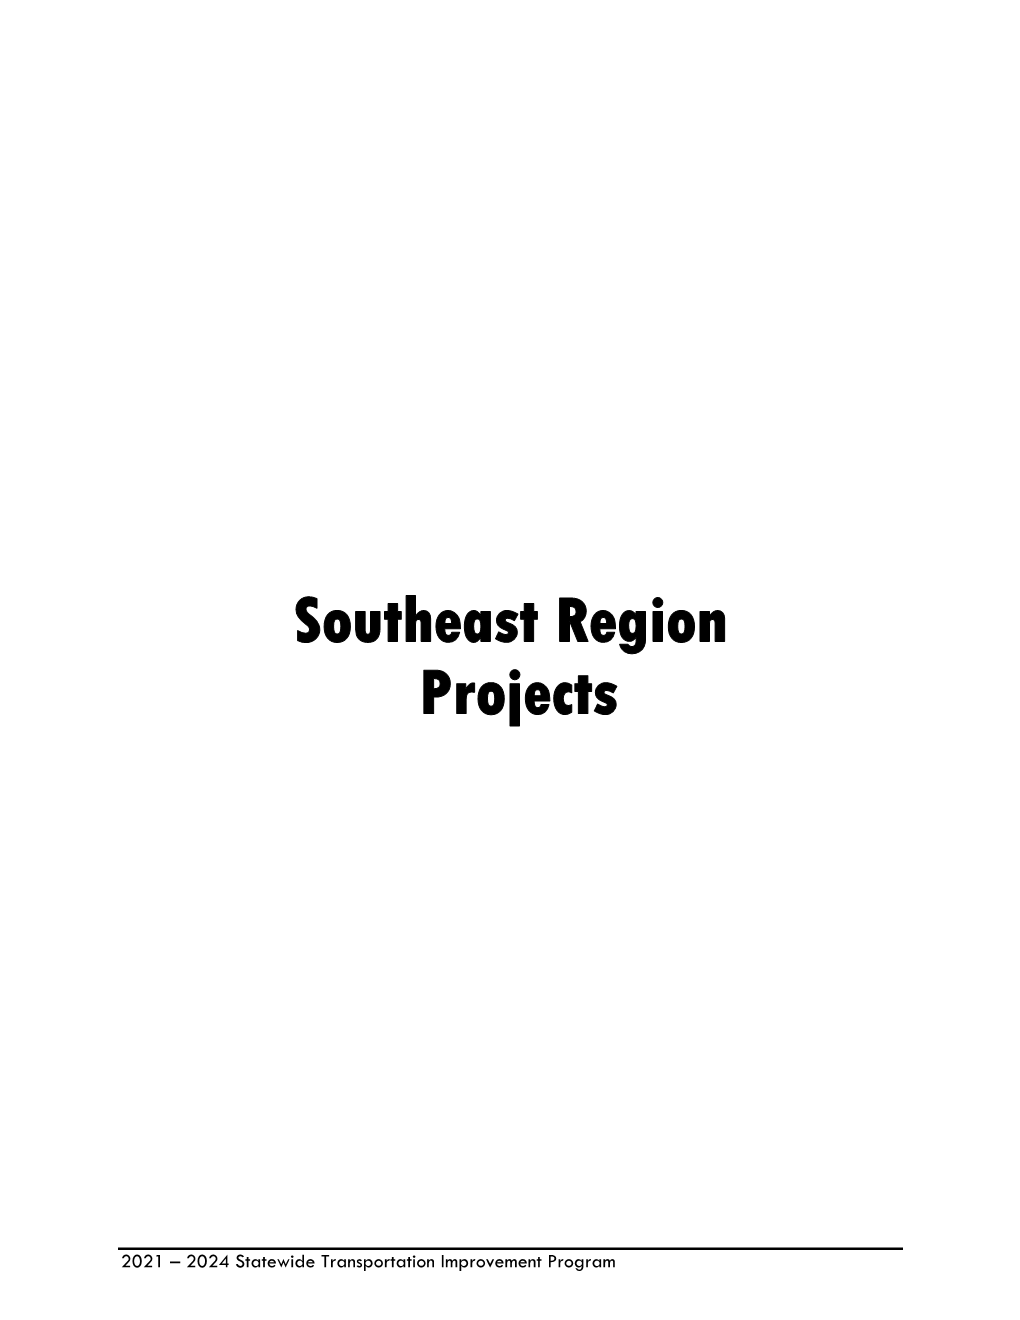 Southeast Region Projects